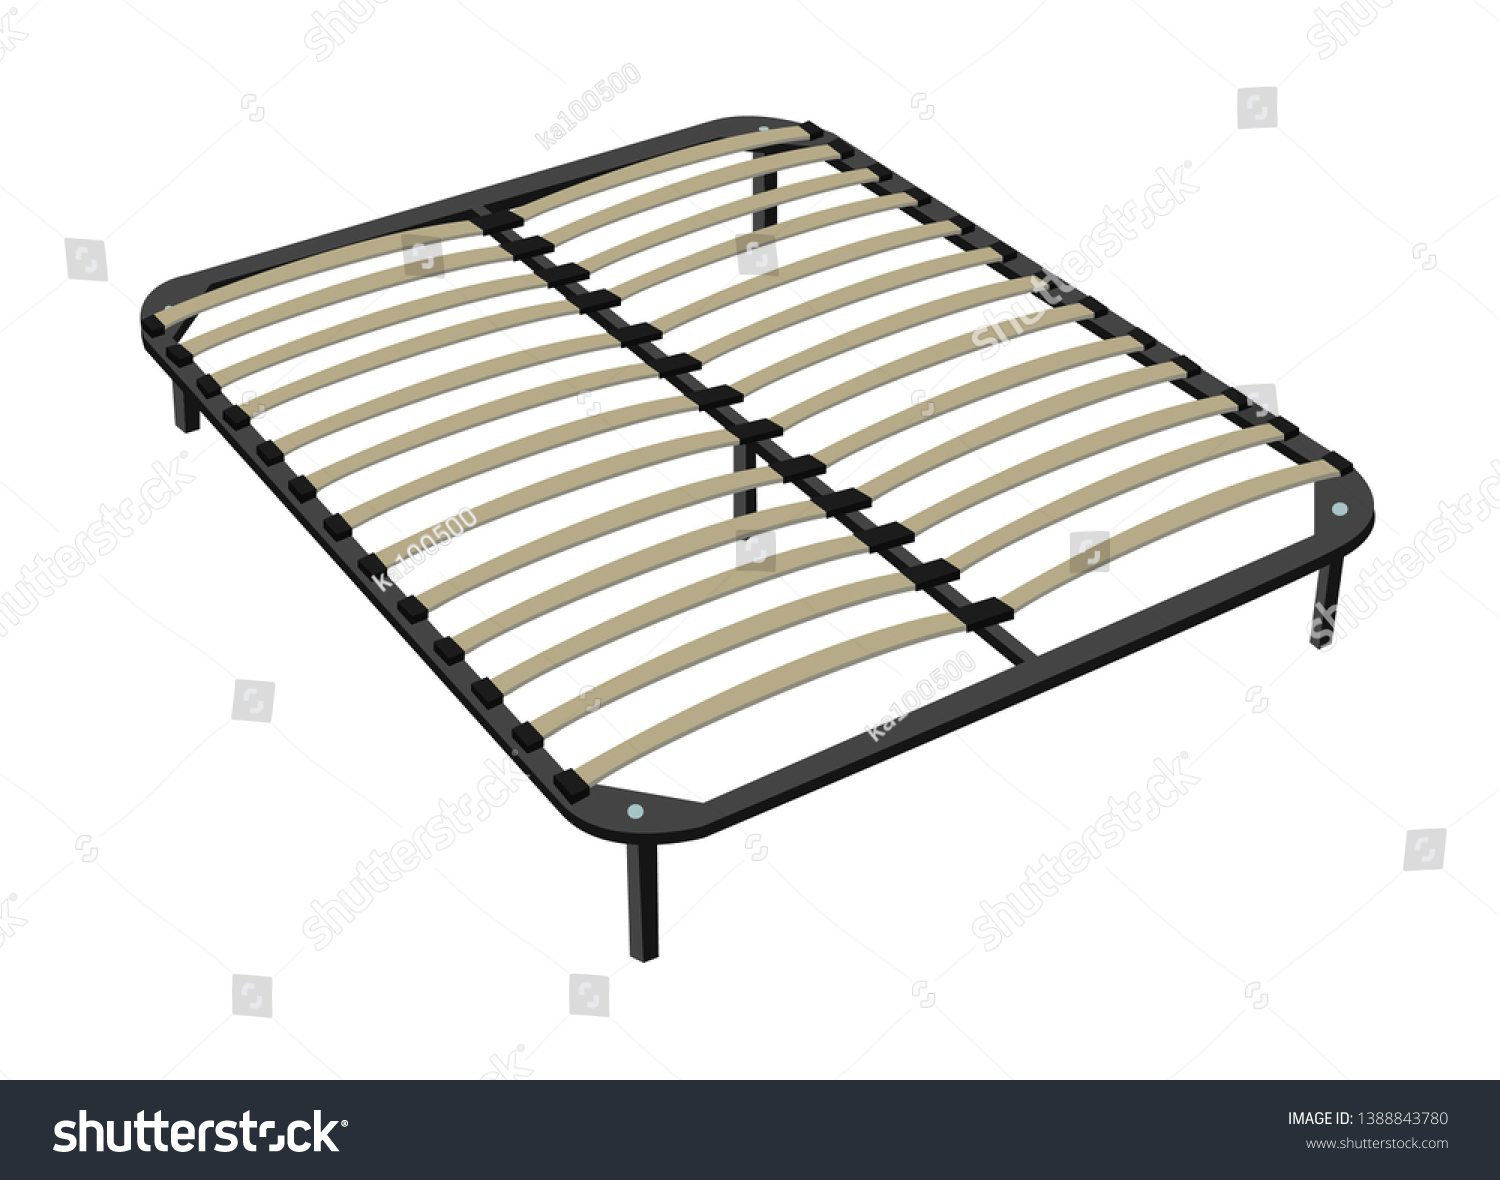 решетка для кровати 140х200